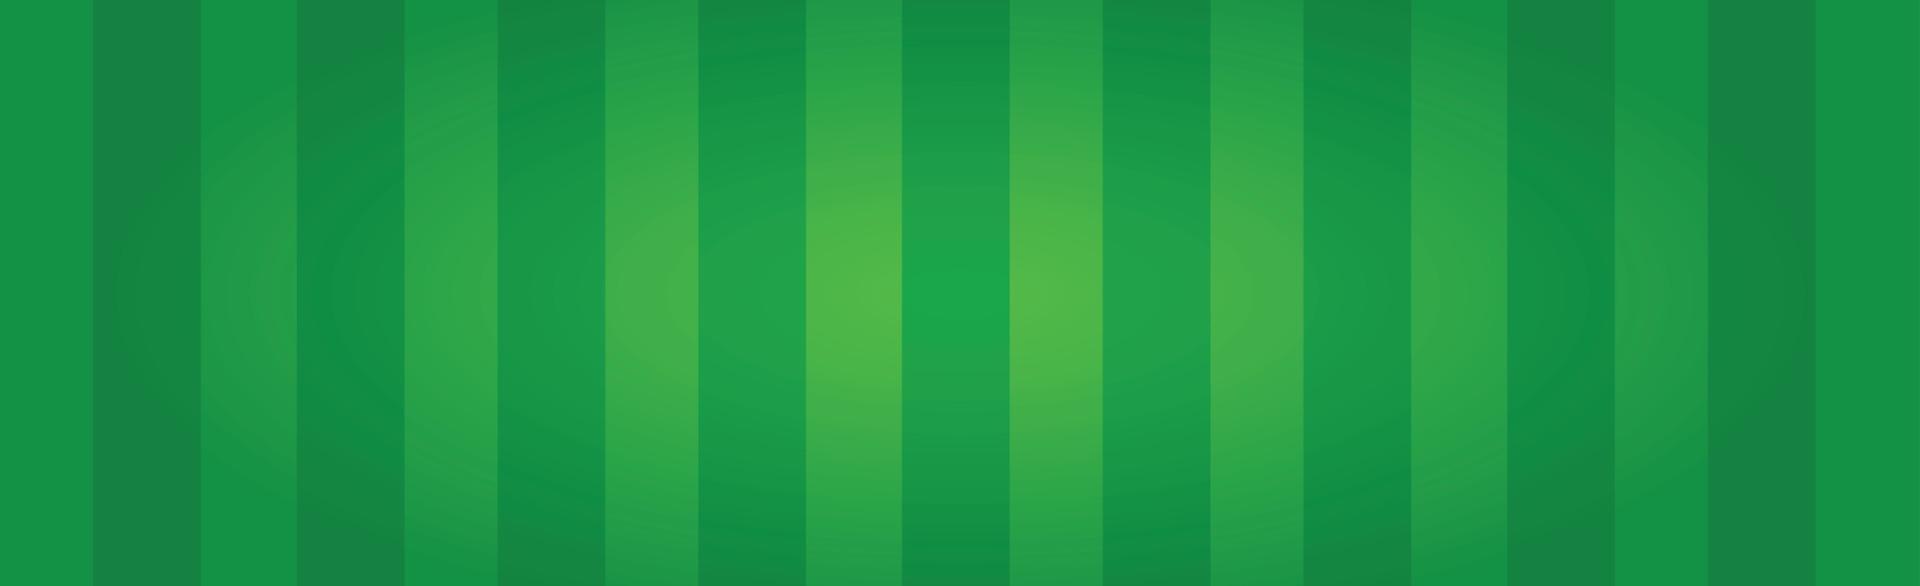 campo da calcio verde realistico con linee verticali - vettore